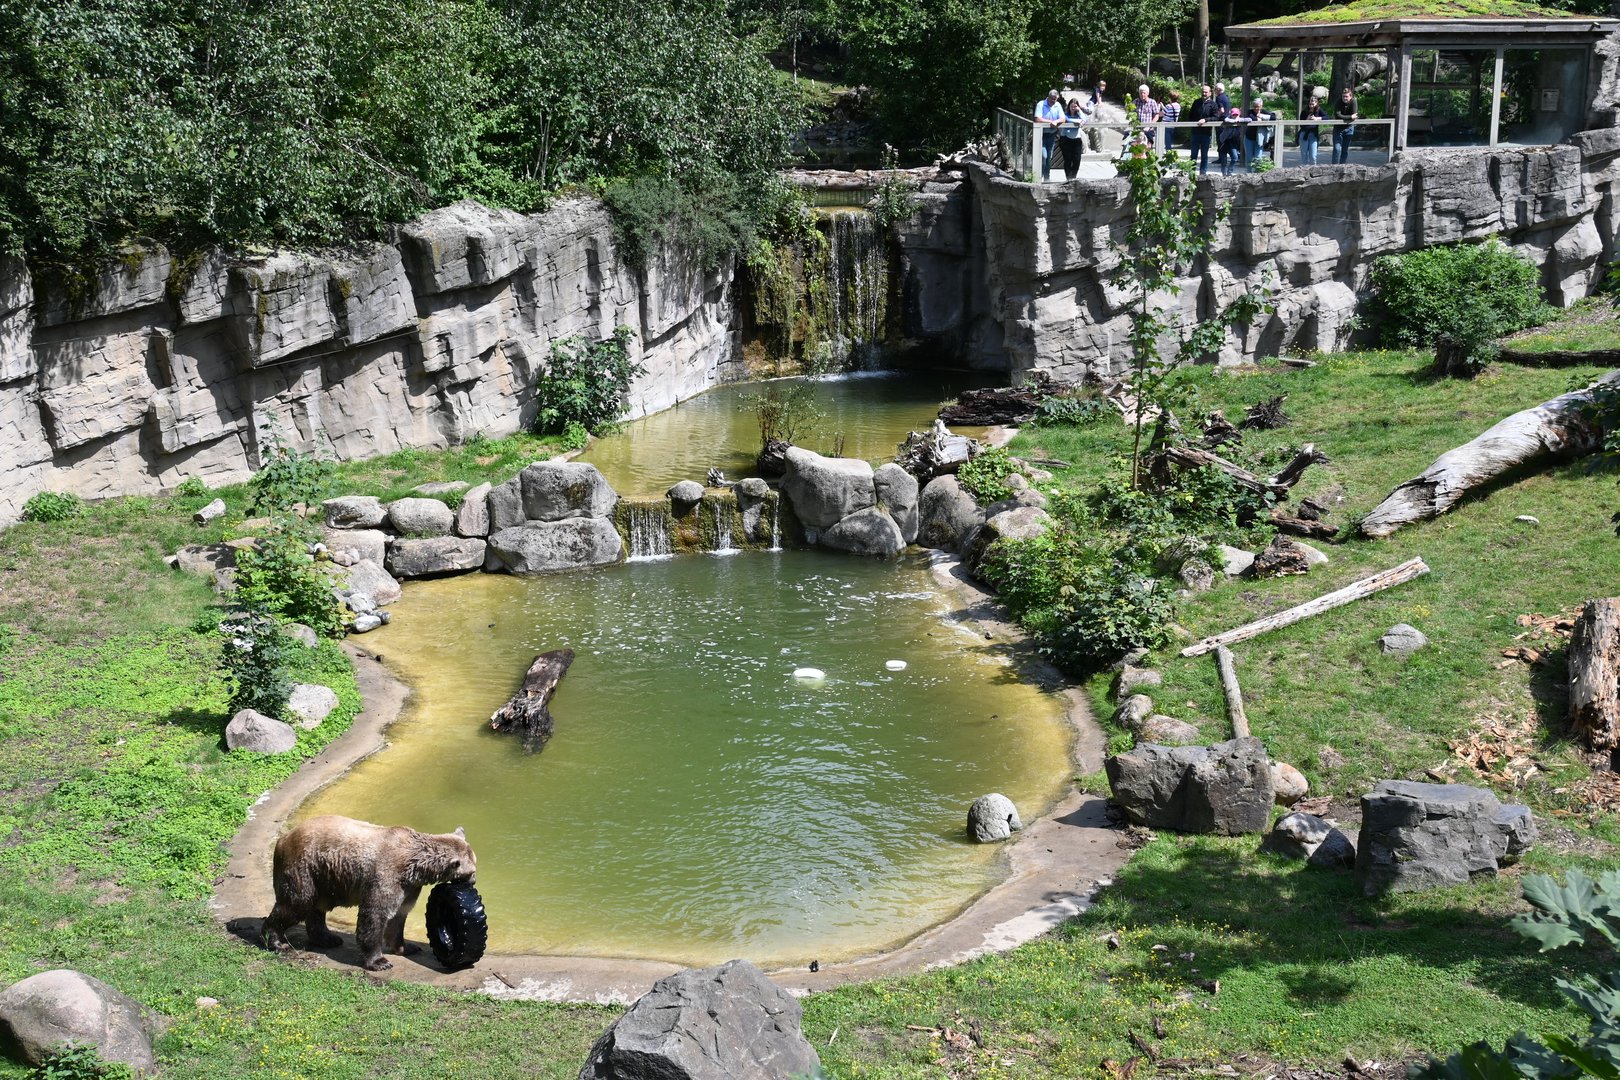 Bären im Zoo Osnabrück